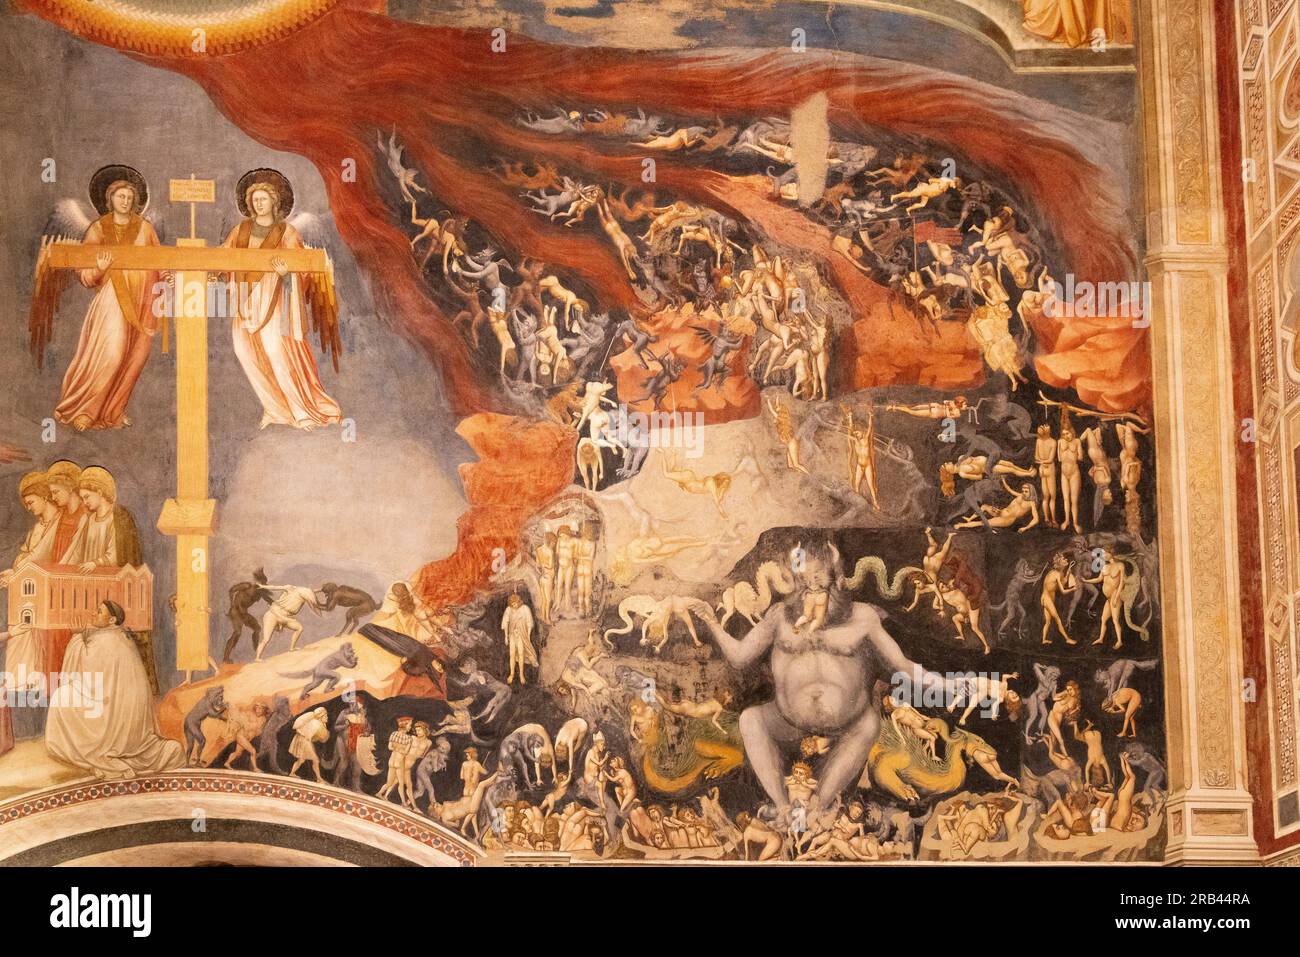 Affresco di Giotto di Bondone, Cappella degli Scrovegni, Padova - dipinto rinascimentale italiano del XIV secolo - dettaglio dell'Inferno dal giudizio universale. Foto Stock